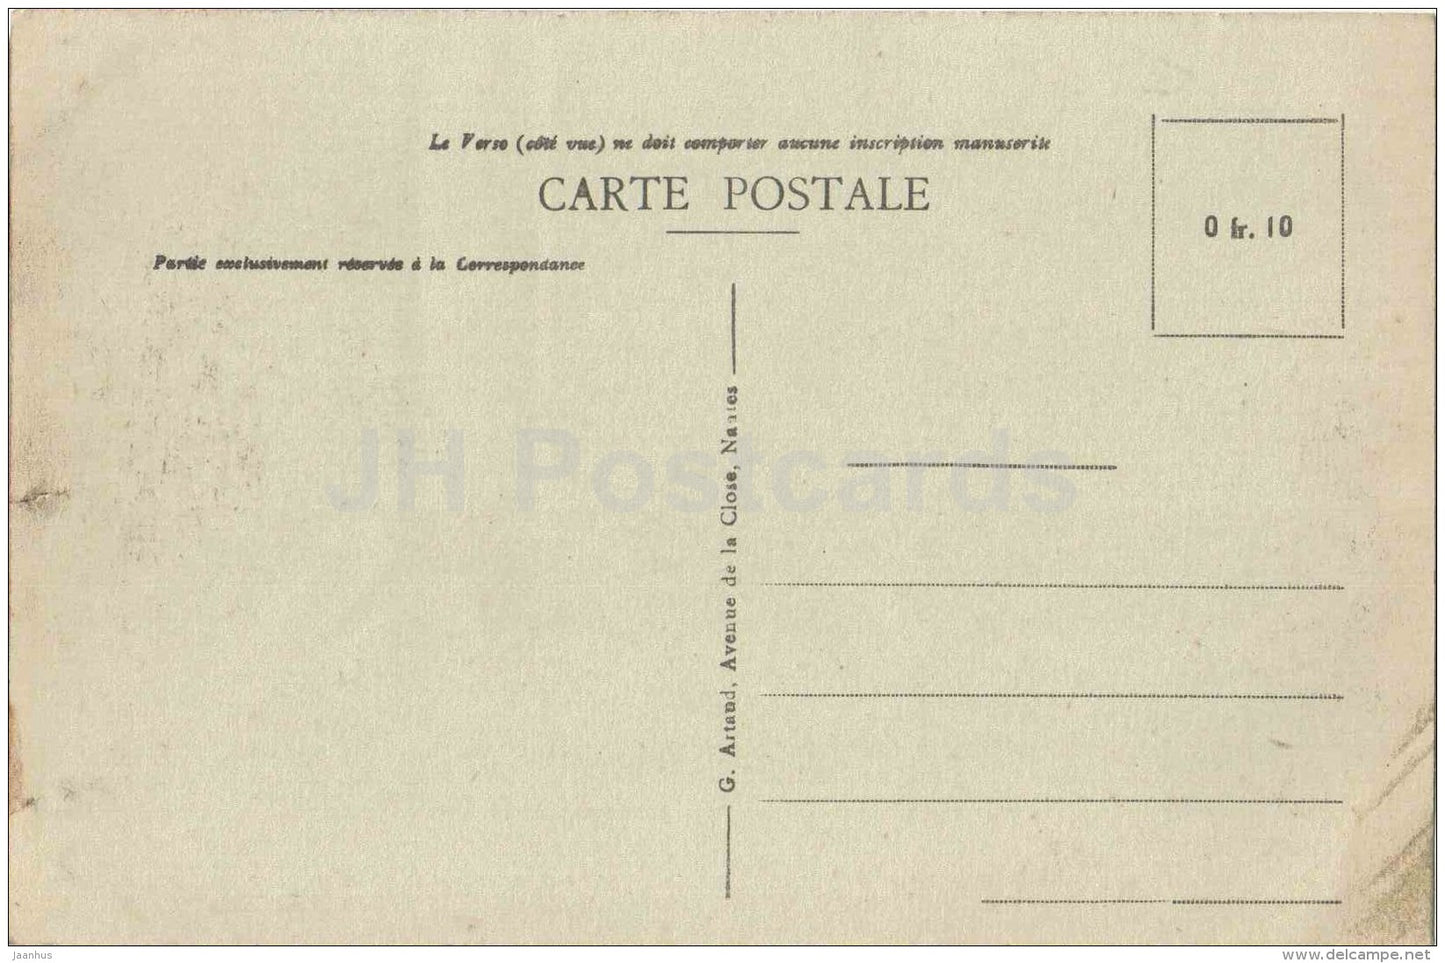 Quai de Bacalan Le Paquebot Europe , des Chargeurs Reunis - Bordeaux  port - ship - France - 218 - old postcard - unused - JH Postcards